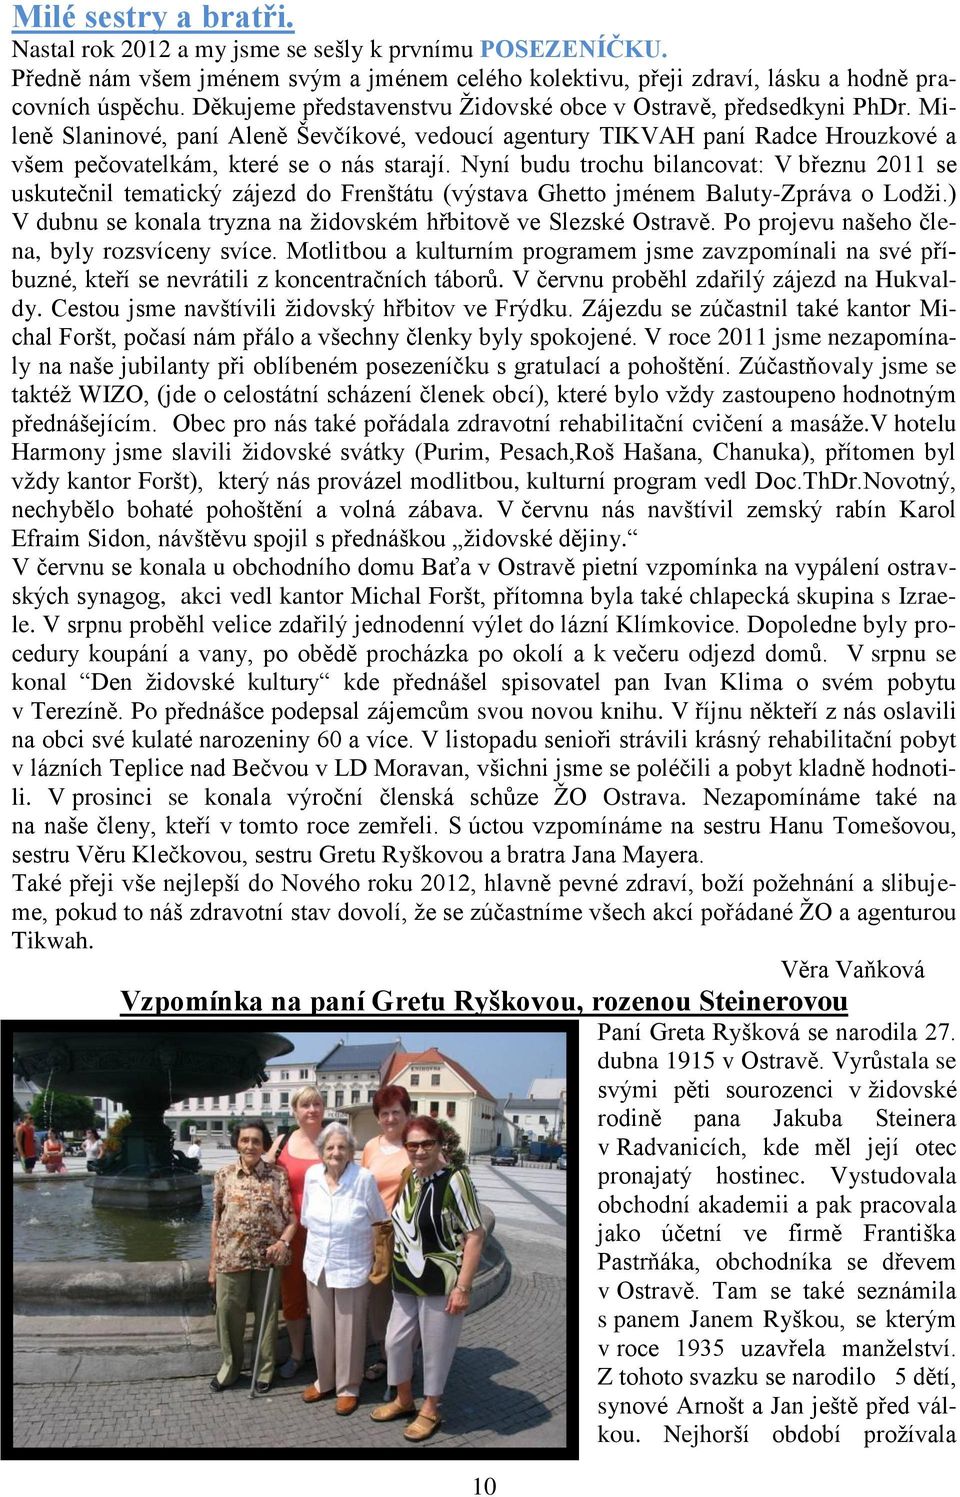 Nyní budu trochu bilancovat: V březnu 2011 se uskutečnil tematický zájezd do Frenštátu (výstava Ghetto jménem Baluty-Zpráva o Lodţi.) V dubnu se konala tryzna na ţidovském hřbitově ve Slezské Ostravě.